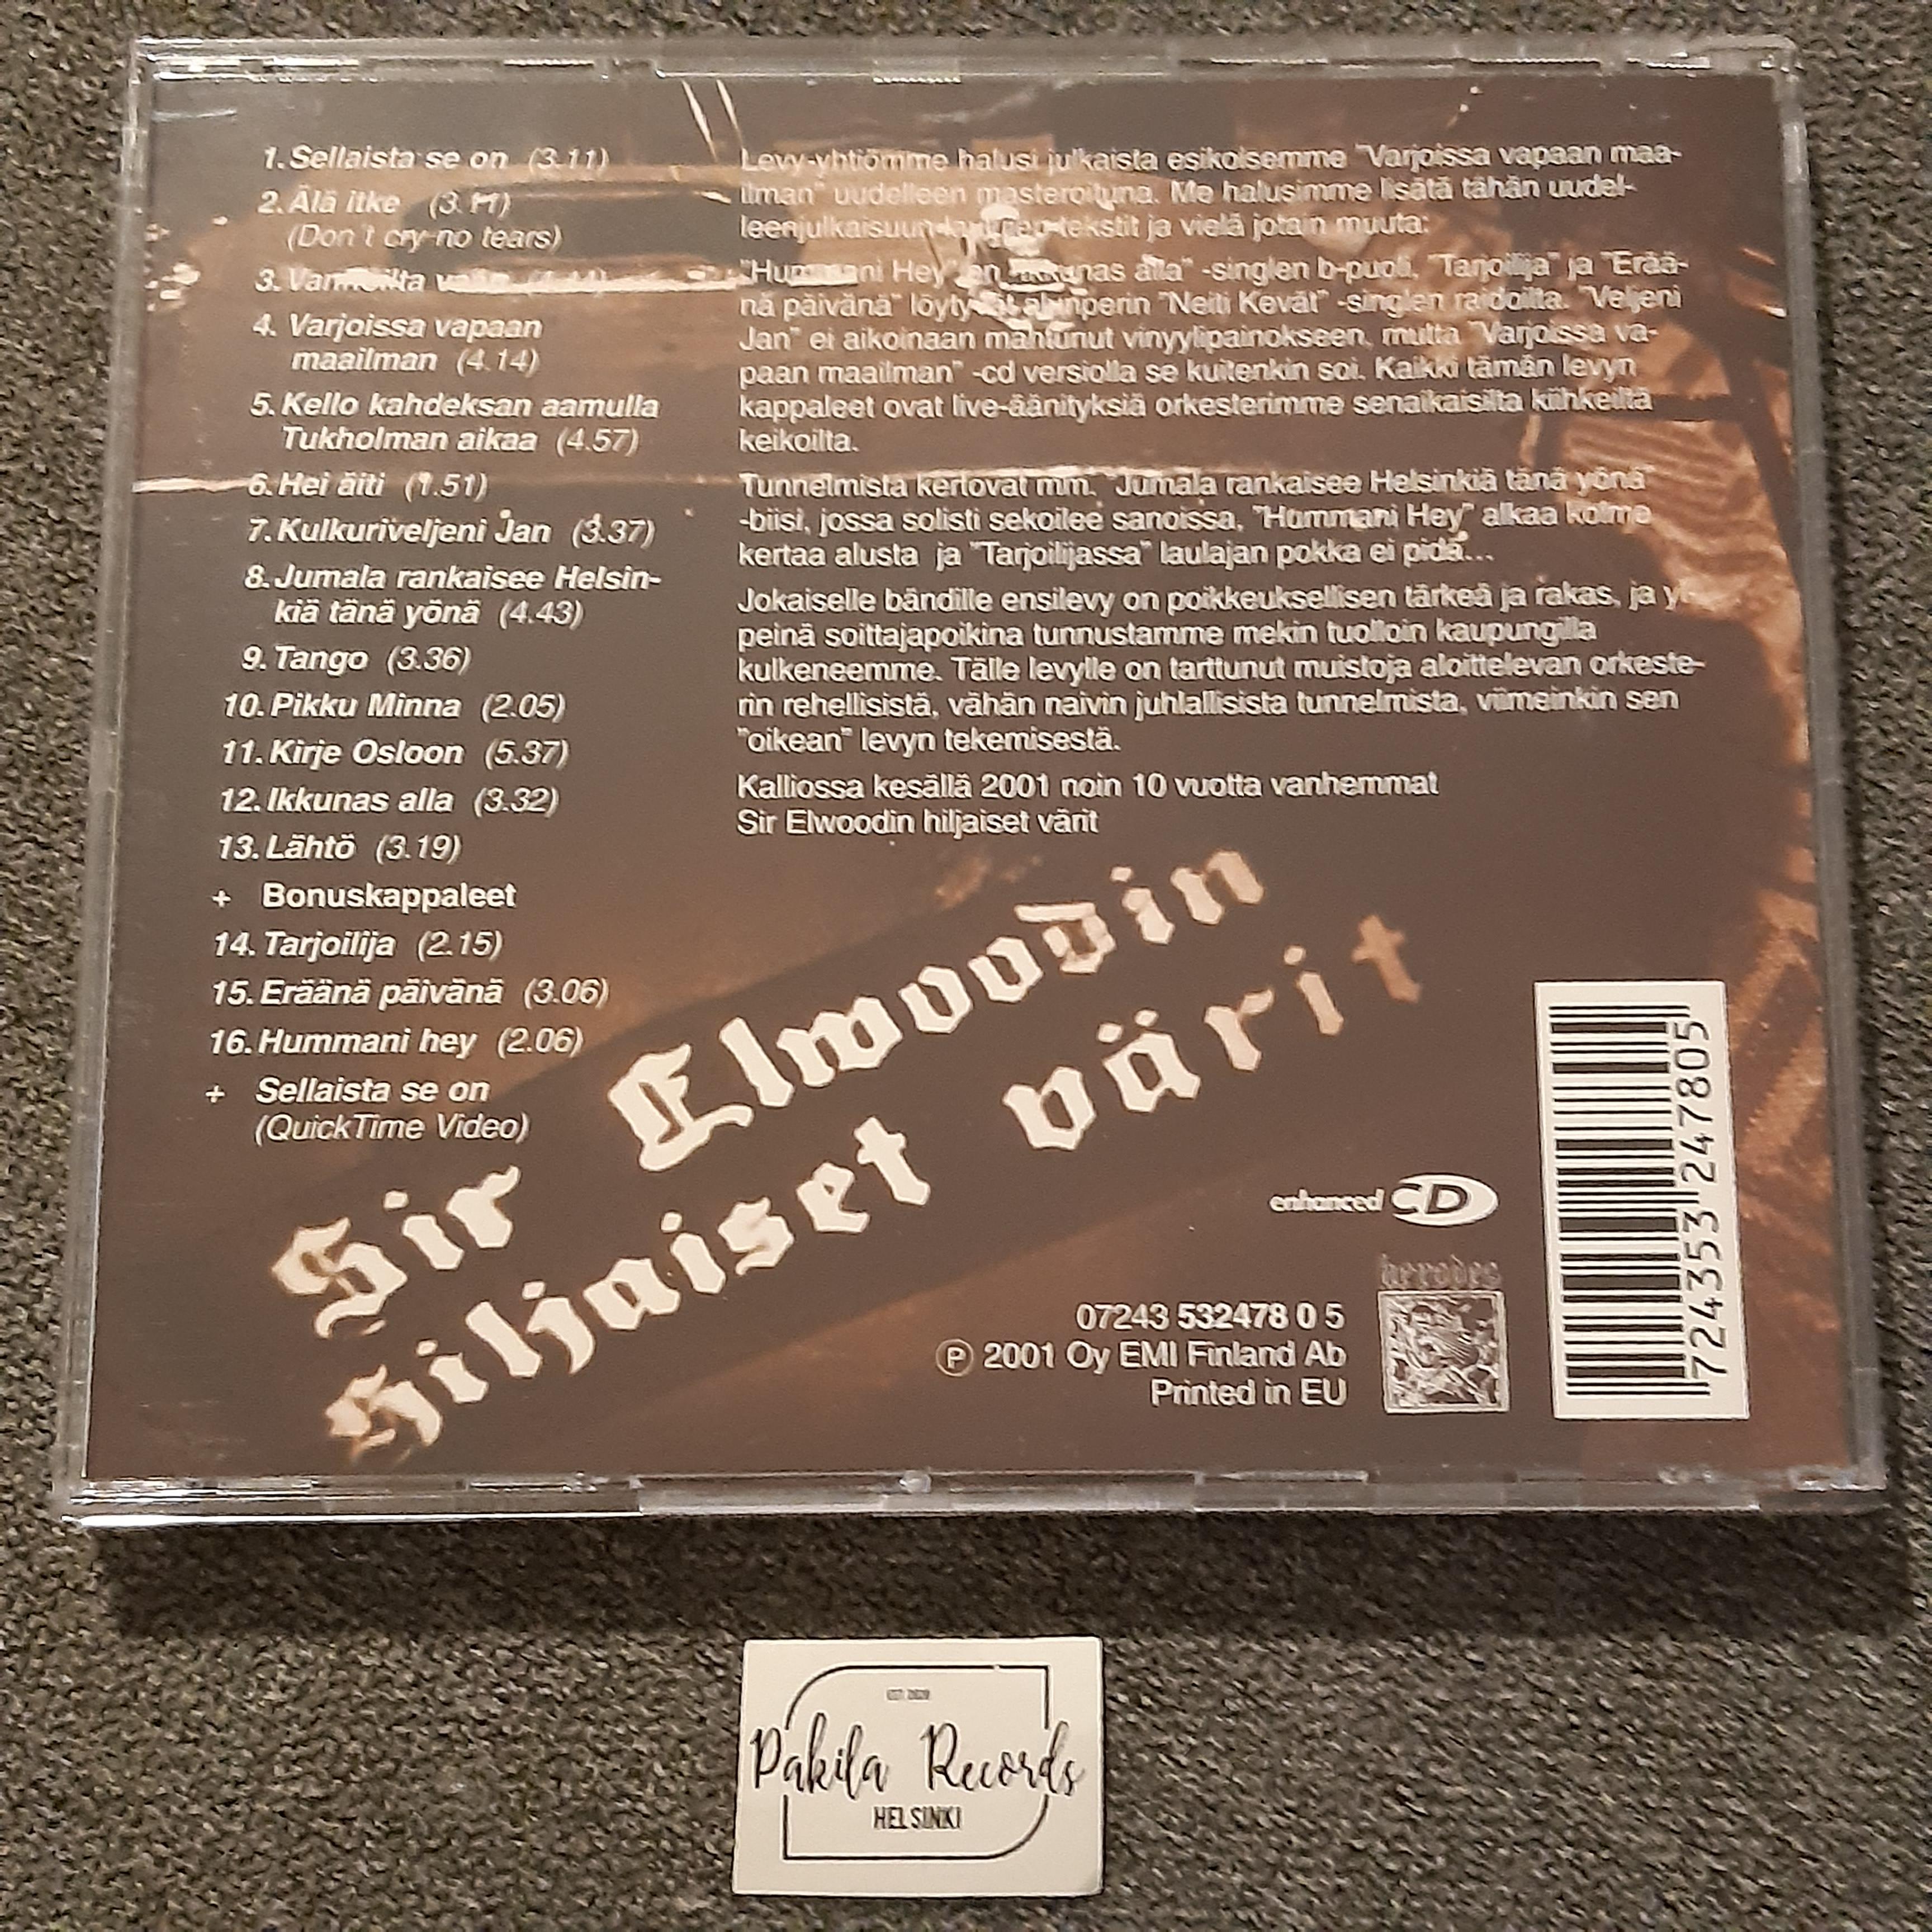 Sir Elwoodin hiljaiset värit - Varjoissa vapaan maan - CD (käytetty)